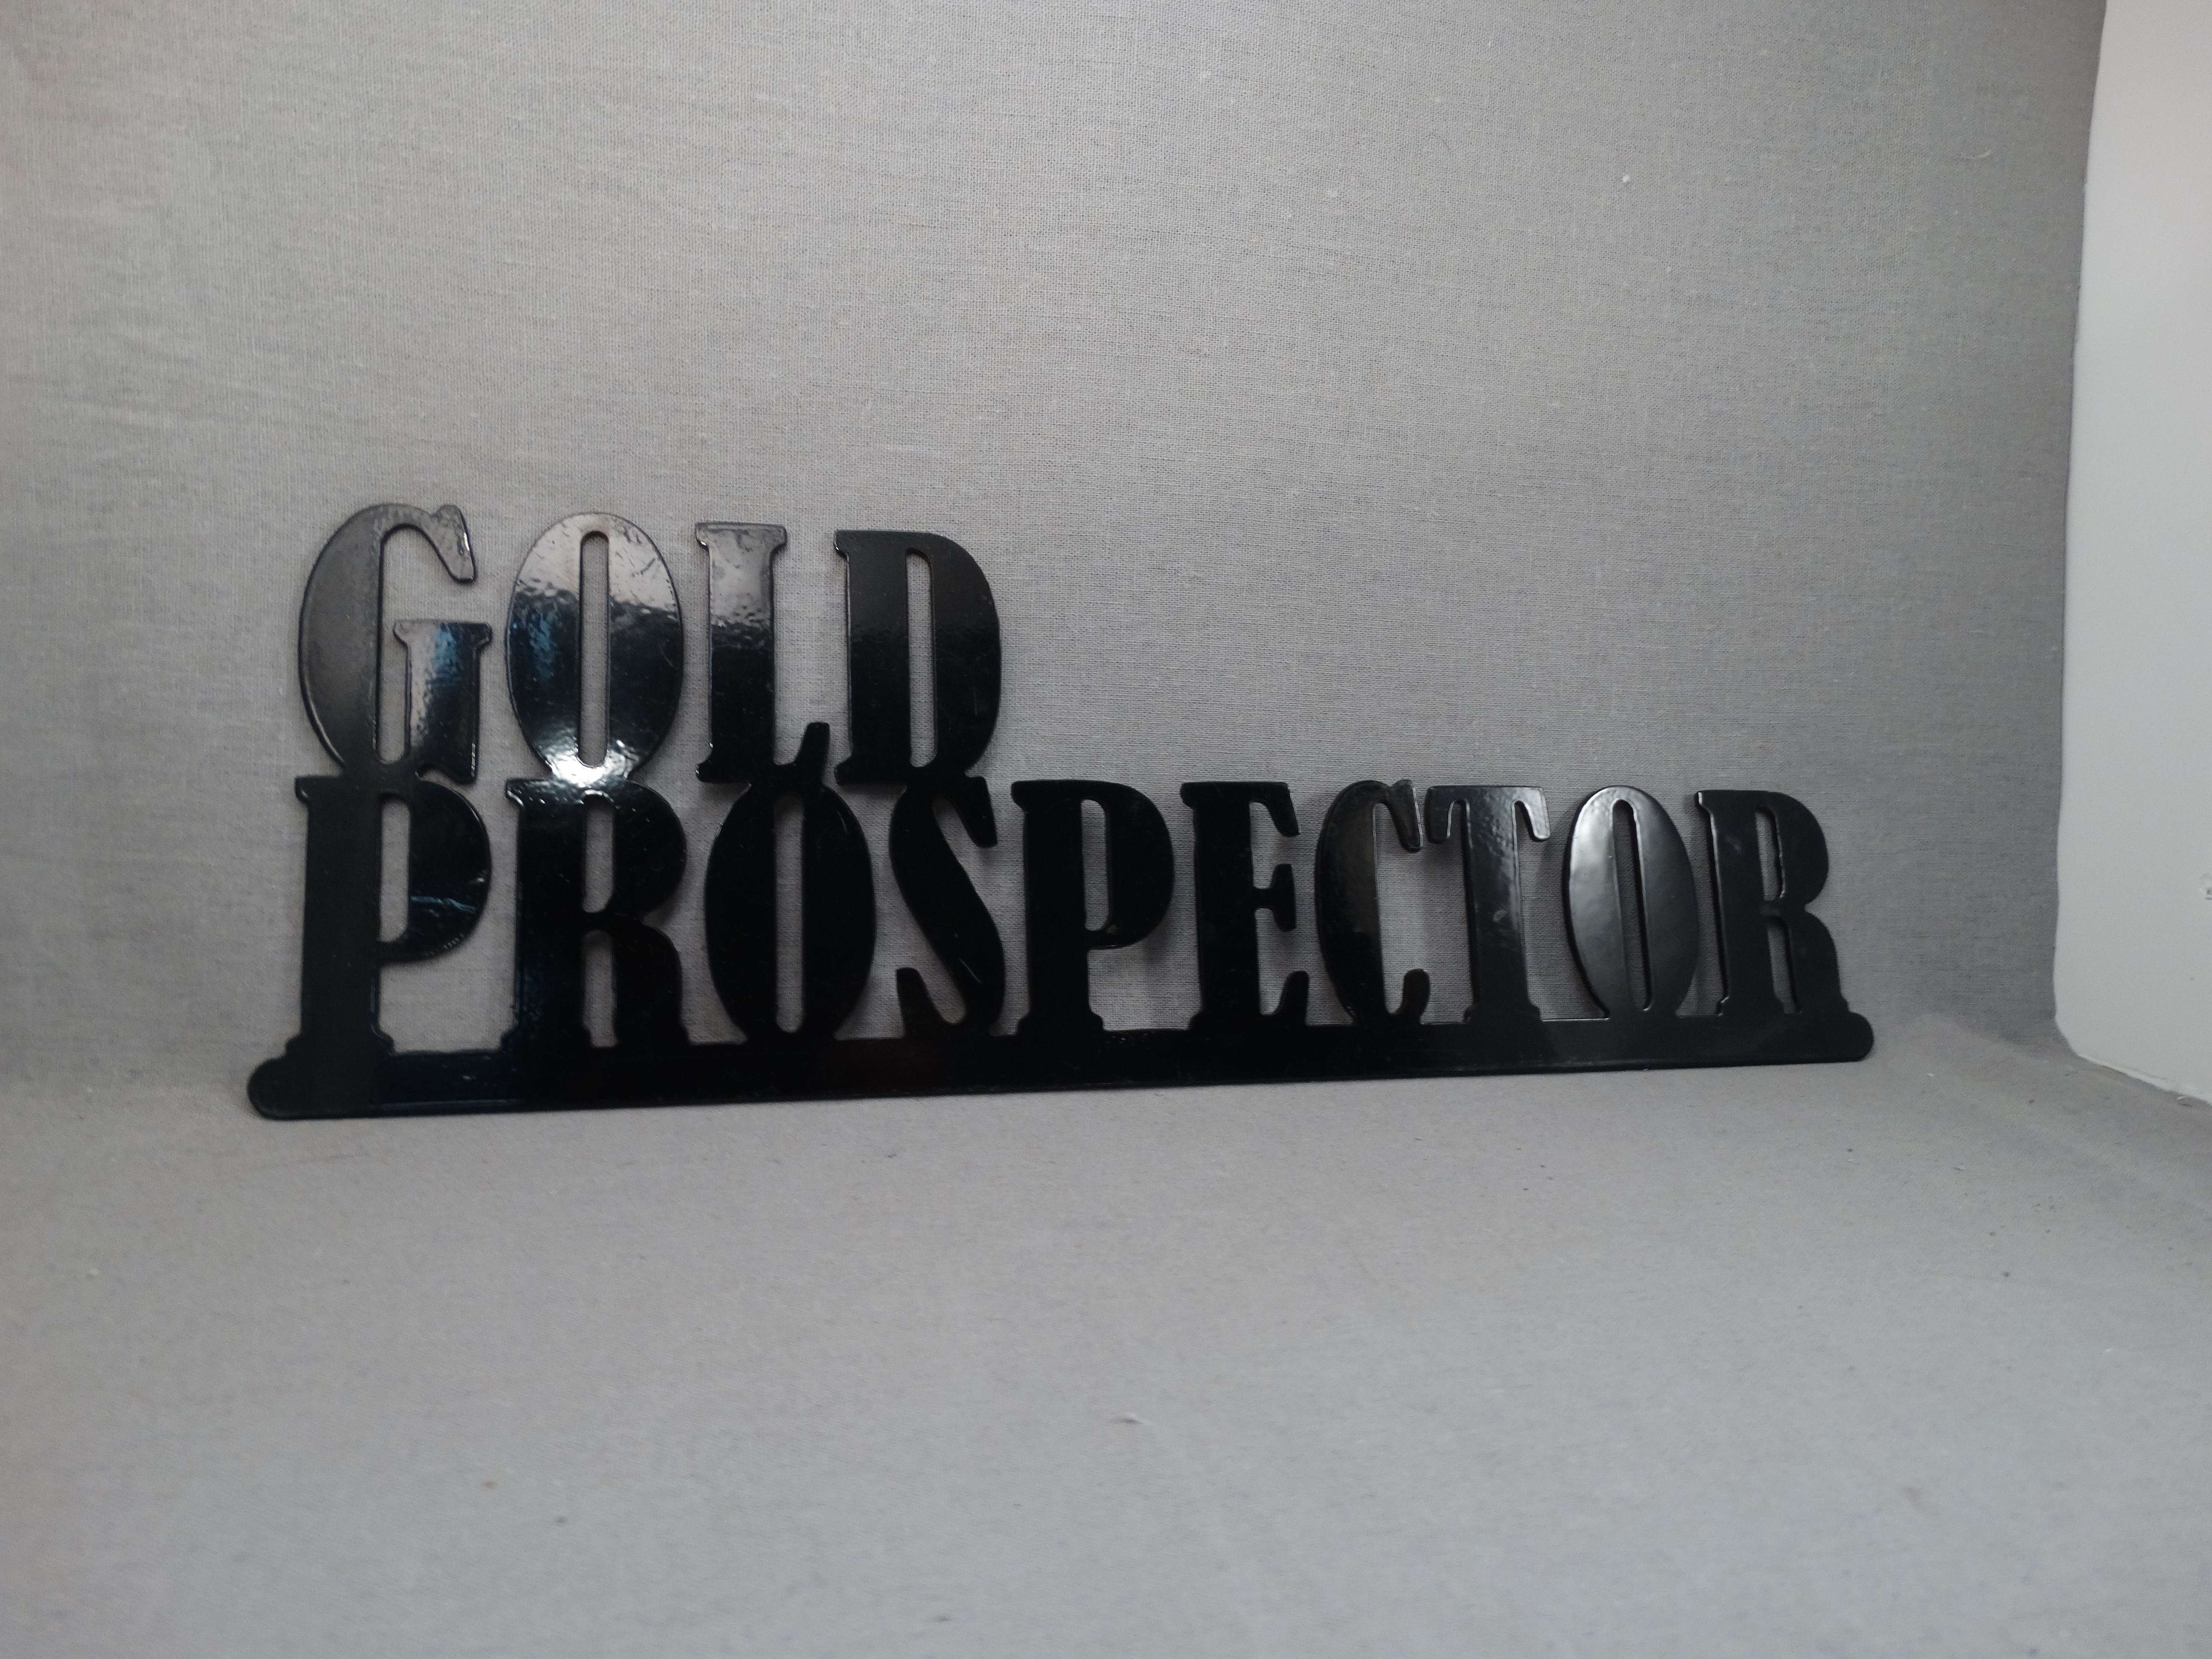 Steel "Gold Prospector" Black Colored Sign